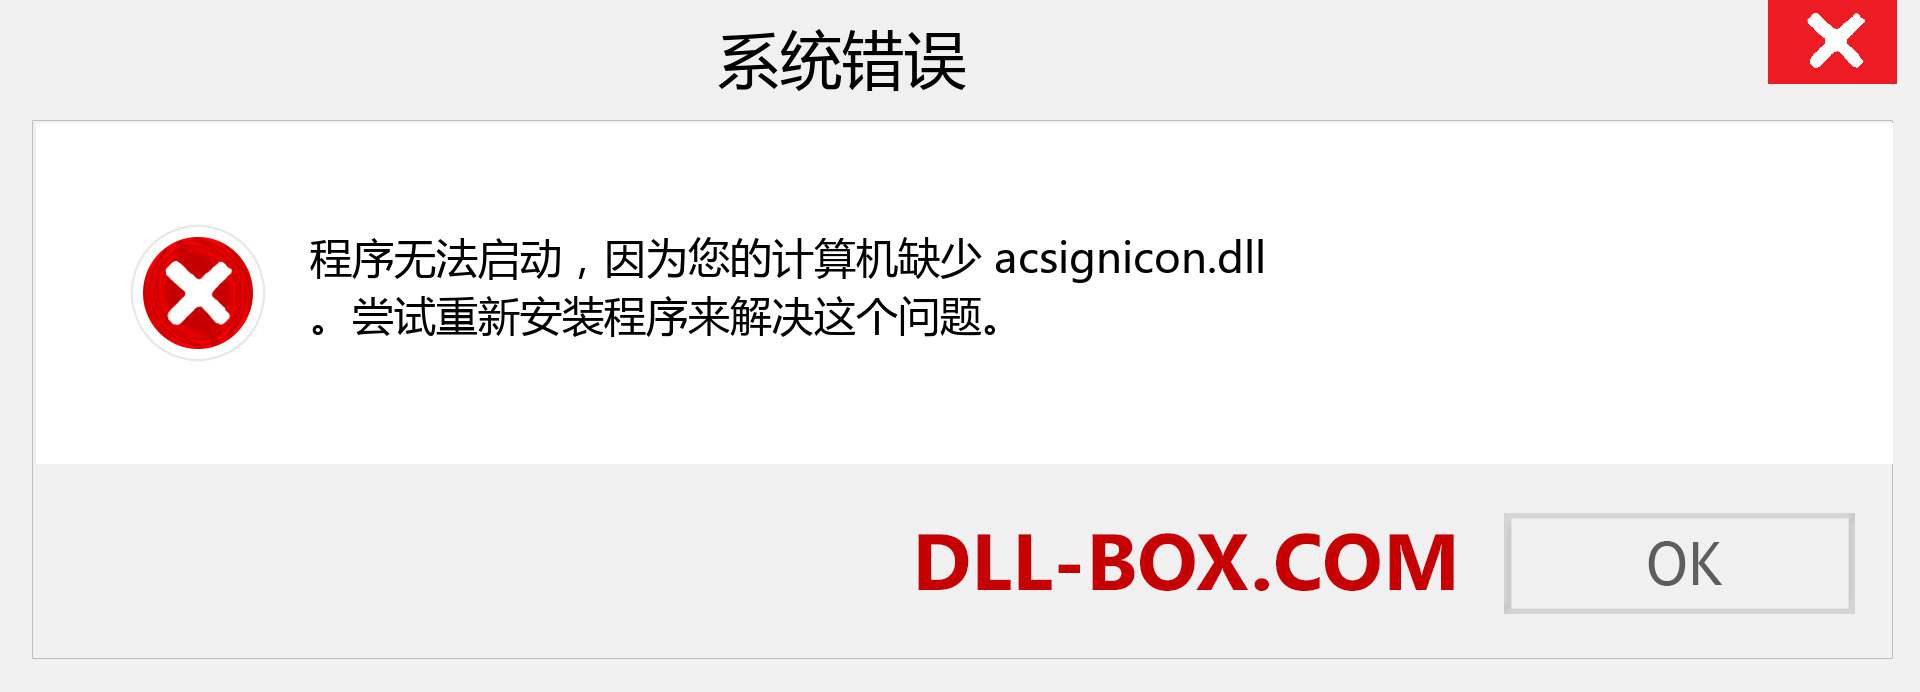 acsignicon.dll 文件丢失？。 适用于 Windows 7、8、10 的下载 - 修复 Windows、照片、图像上的 acsignicon dll 丢失错误